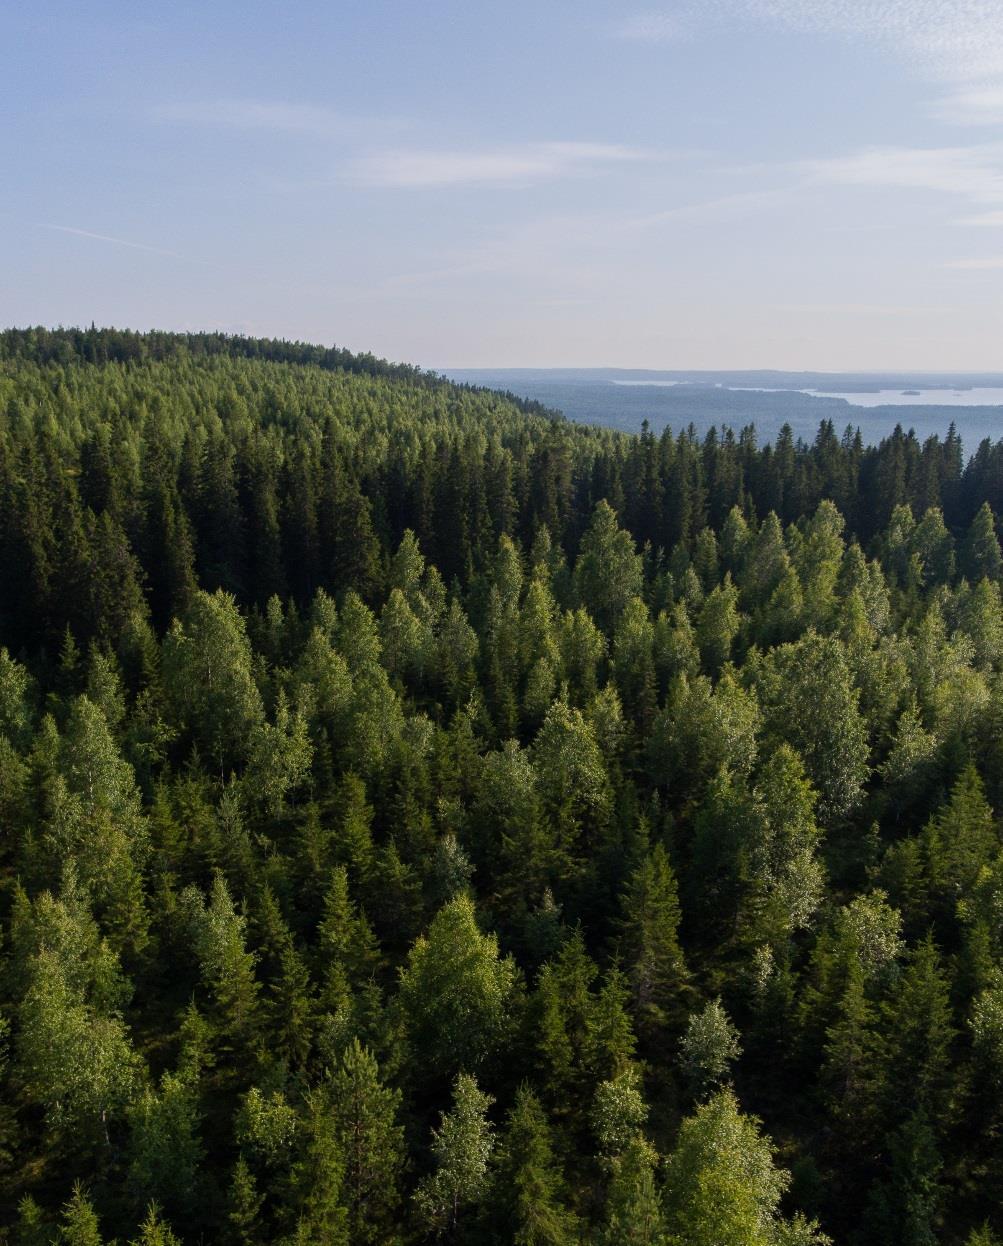 Taustaa metsätilamyynnille Vapaaseen myyntiin ei Suomessa tullut kysyntään nähden riittävästi tiloja (tilanne ennen v.